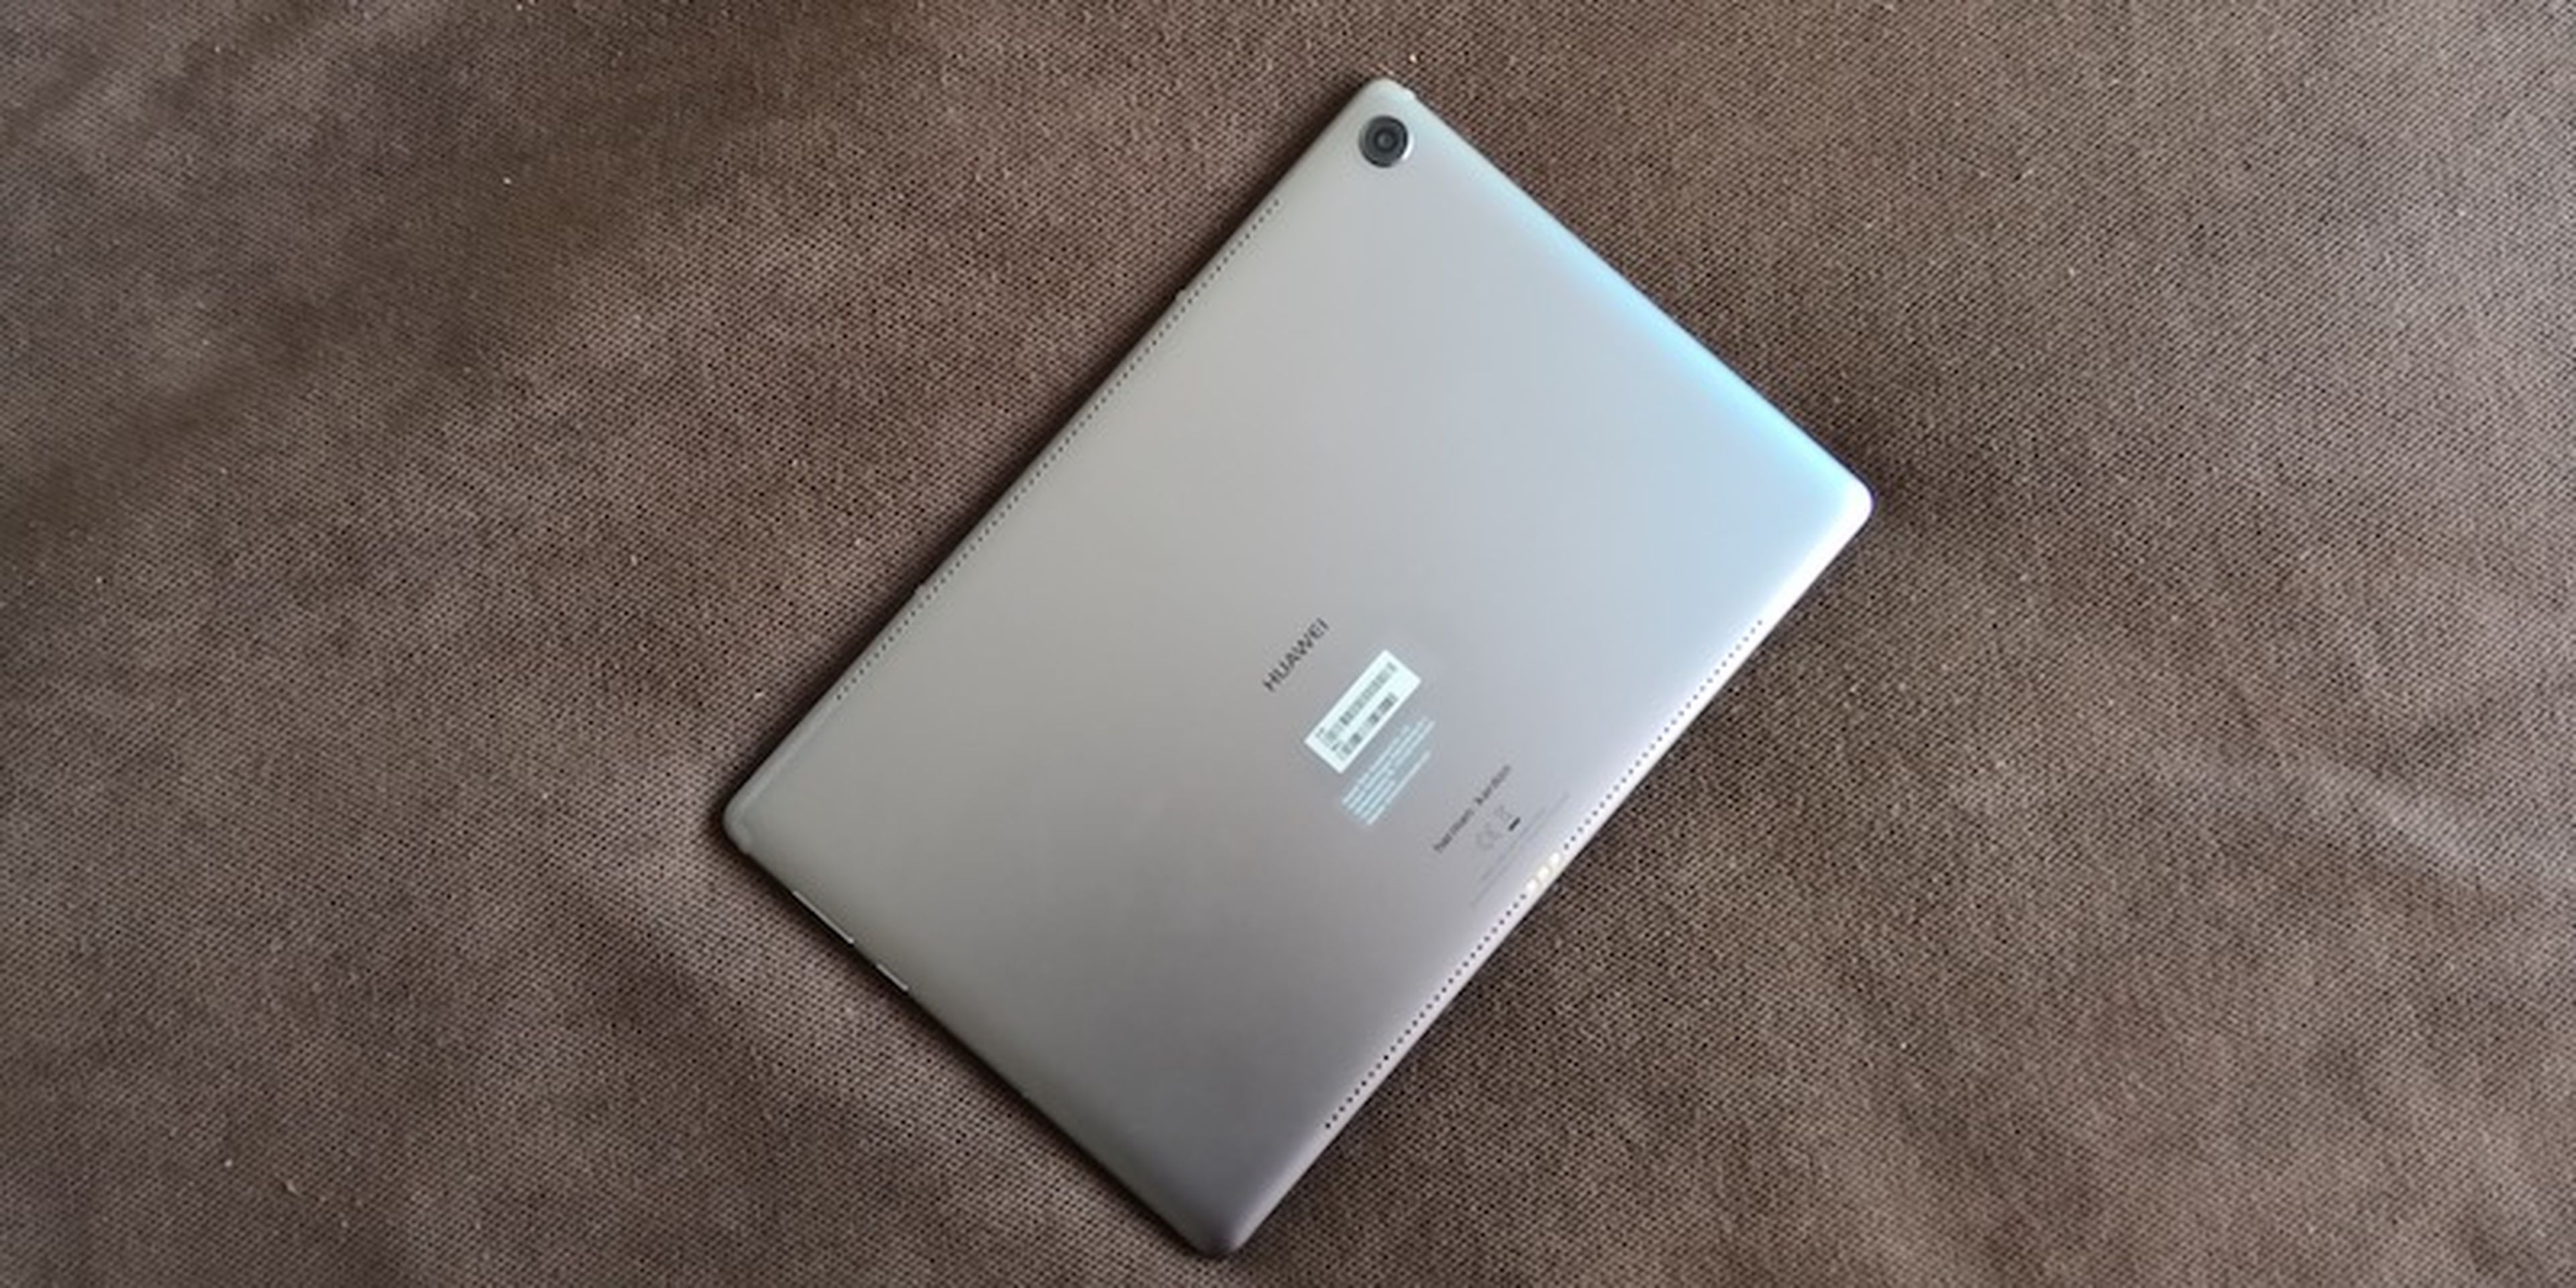 MediaPad M5 10, impresiones con la nueva tablet de Huawei